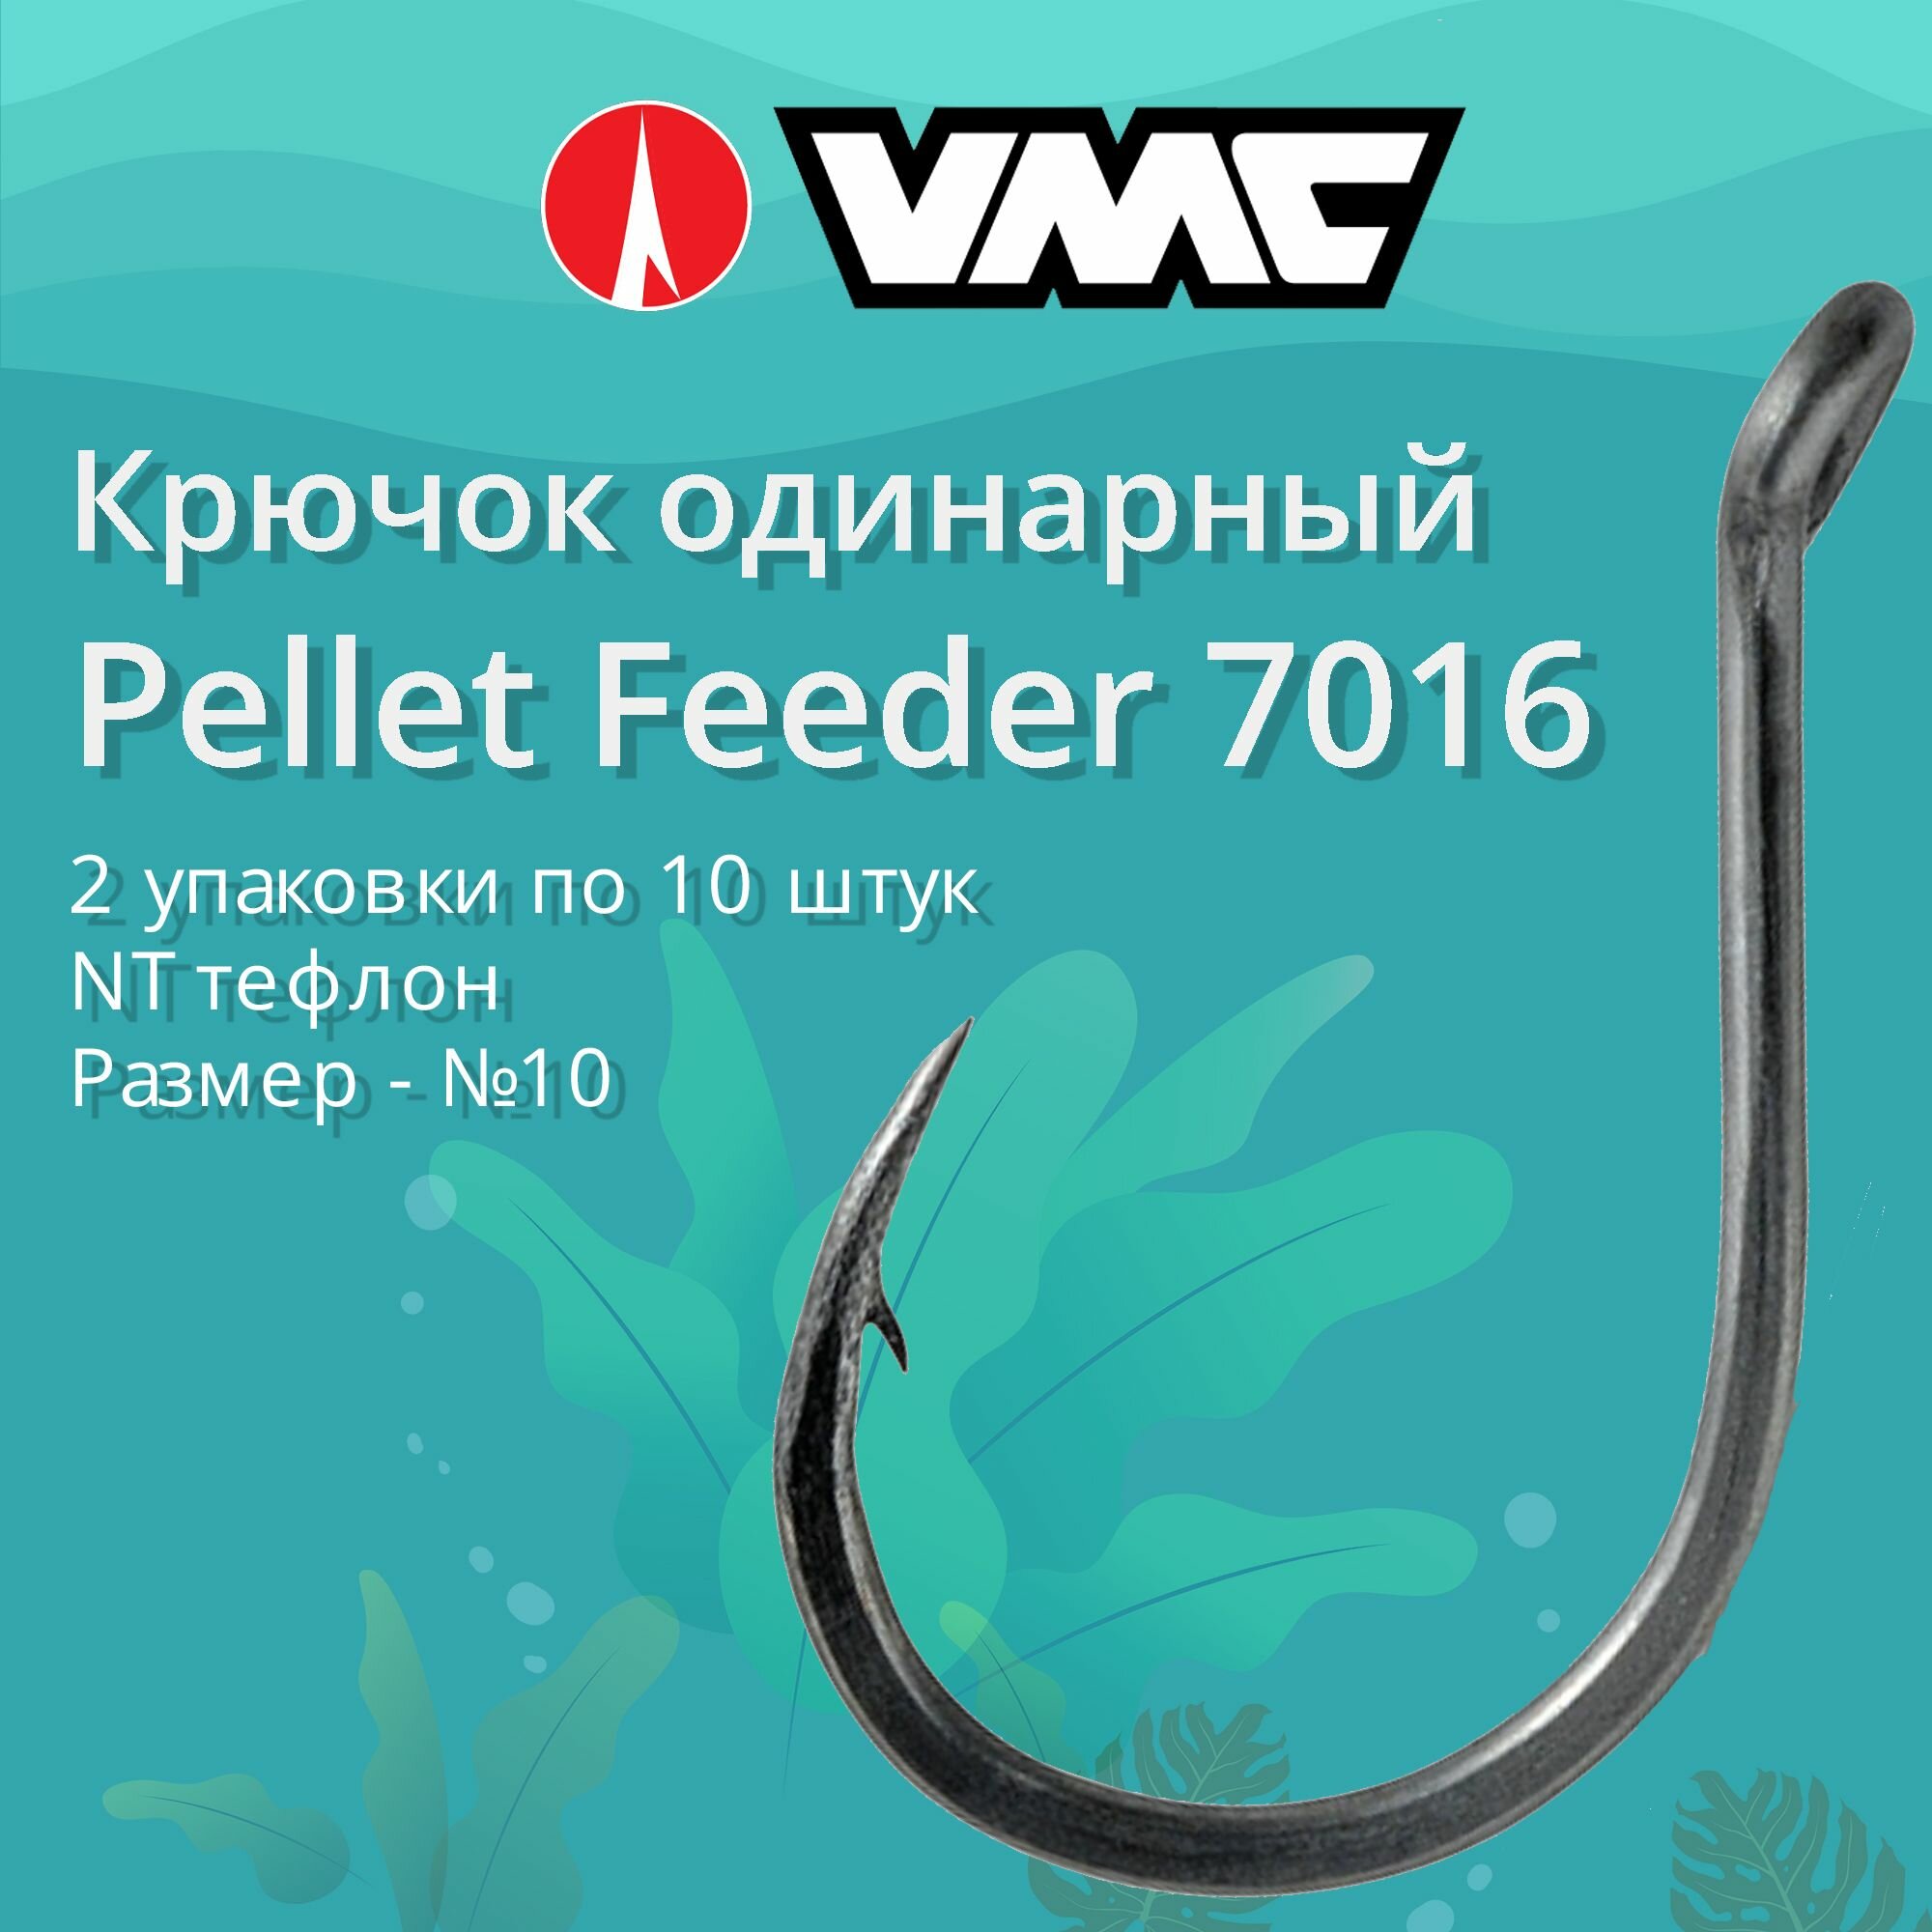 Крючки для рыбалки (одинарный) VMC Pellet Feeder 7016 NT (тефлон) №10 2 упаковки по 10 штук